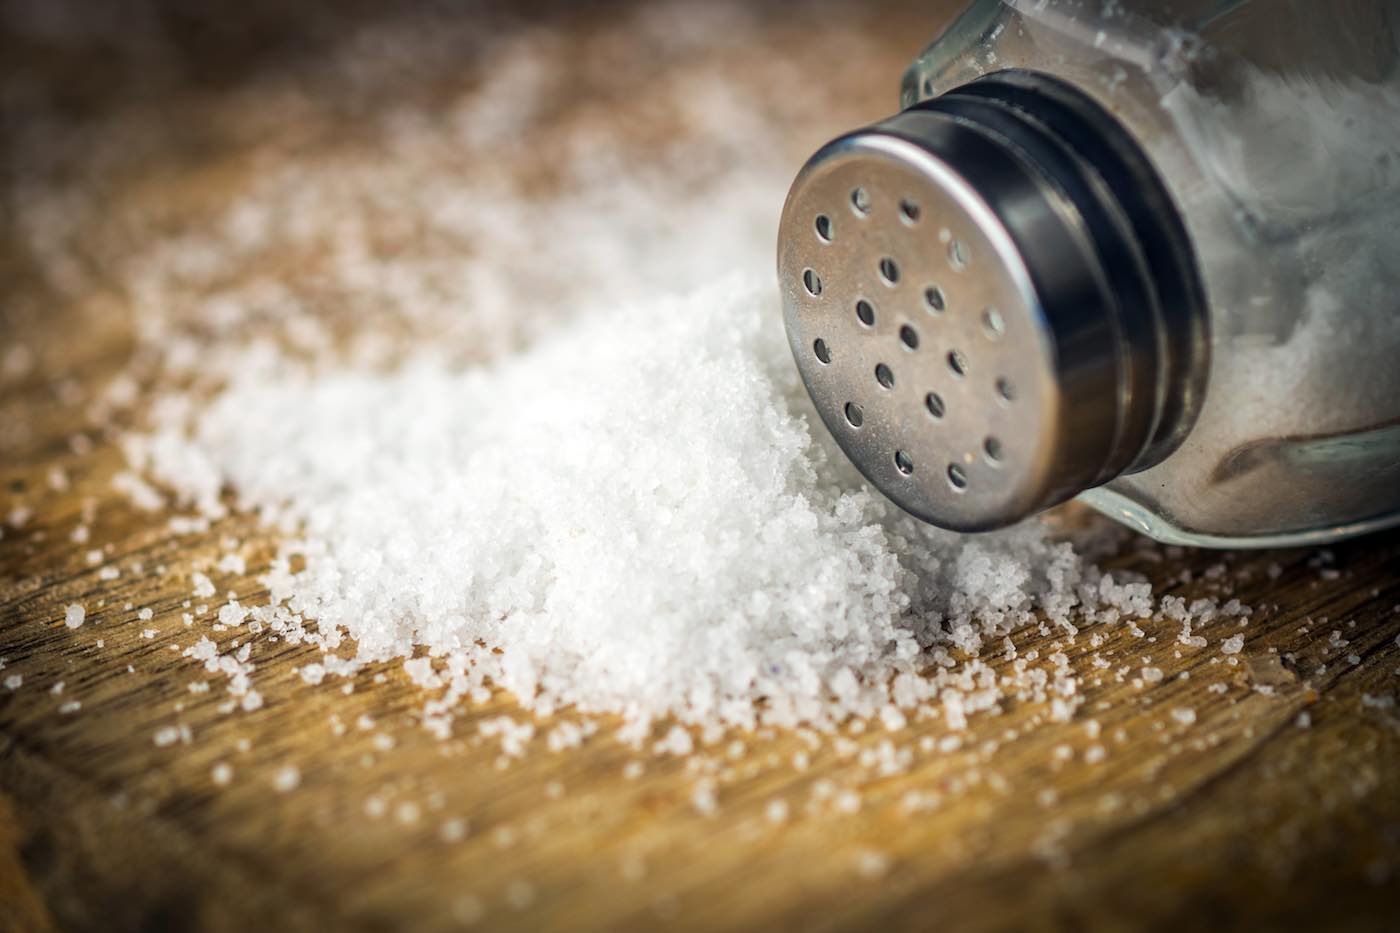 oại muối ăn có sẵn trong căn bếp chính là một giải pháp tự nhiên giúp bạn kiểm soát cỏ dại hiệu quả.